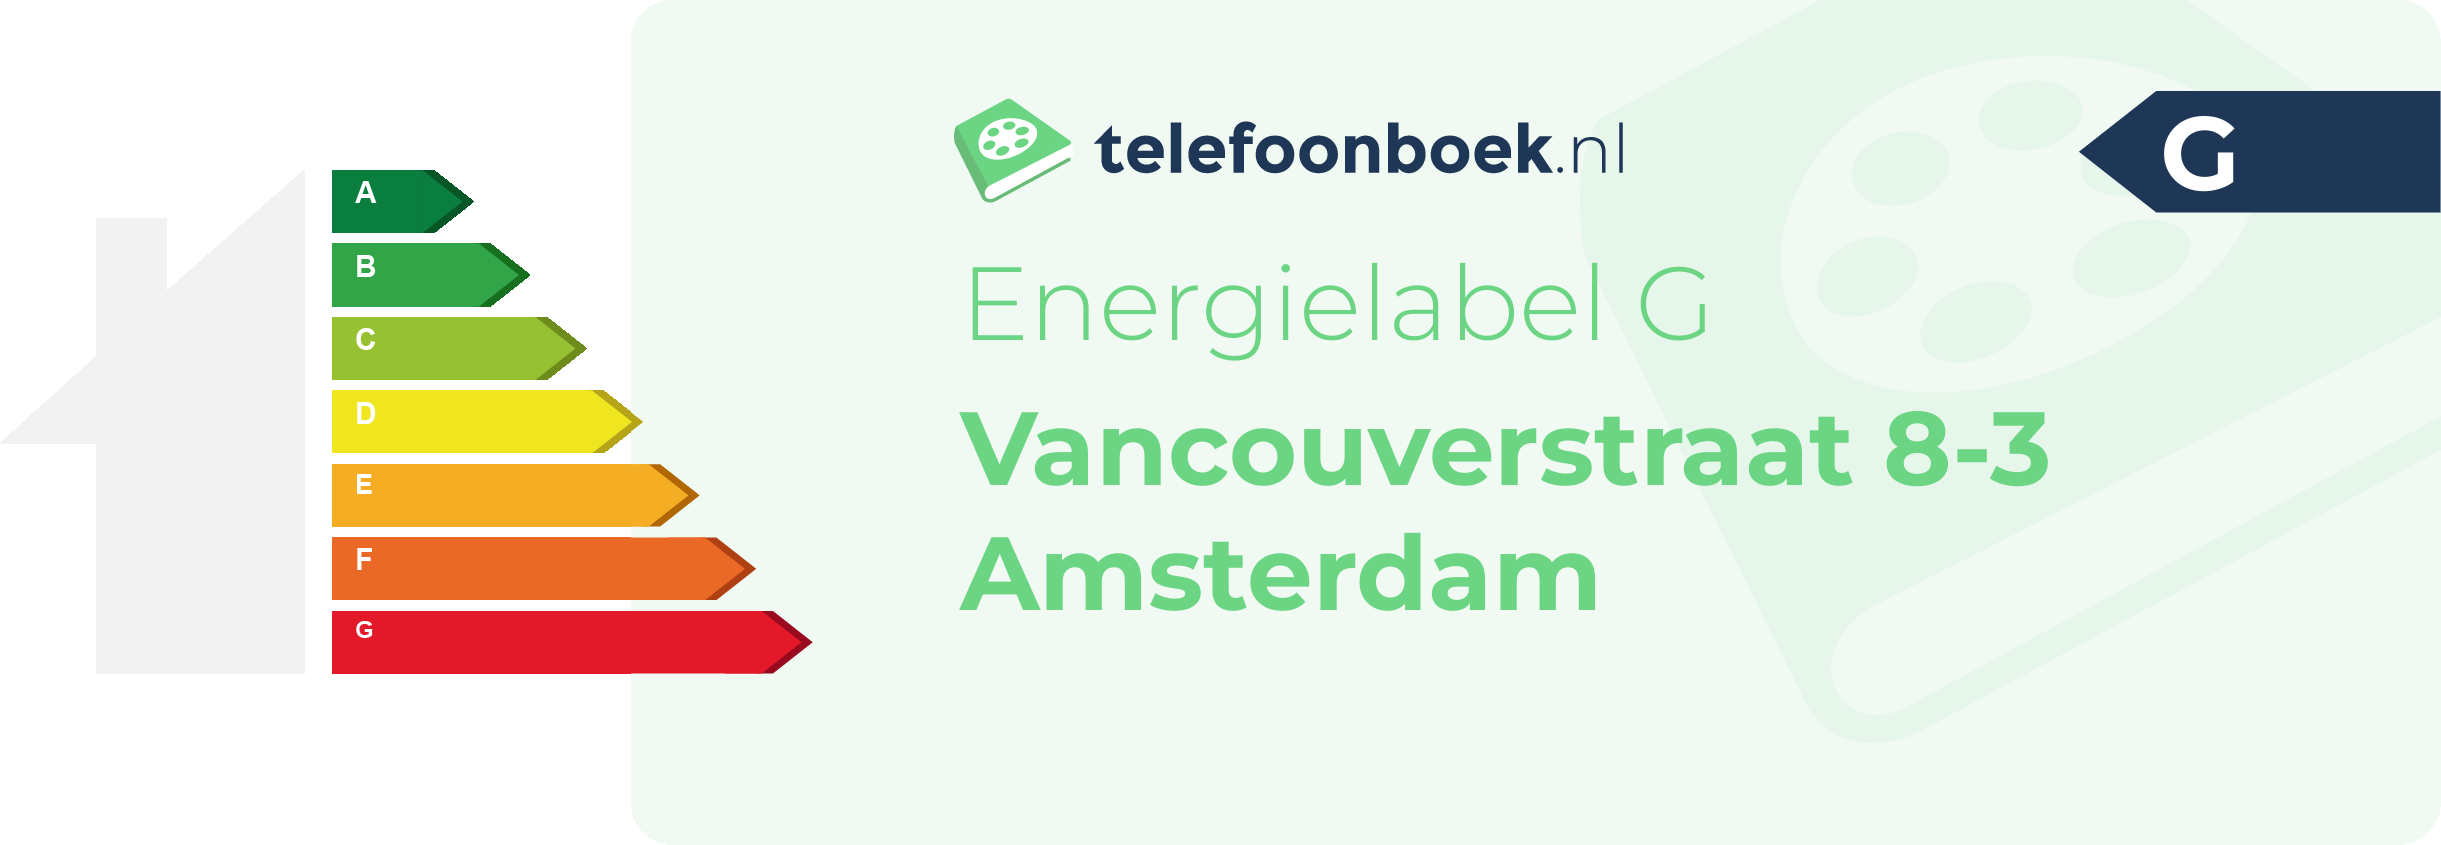 Energielabel Vancouverstraat 8-3 Amsterdam